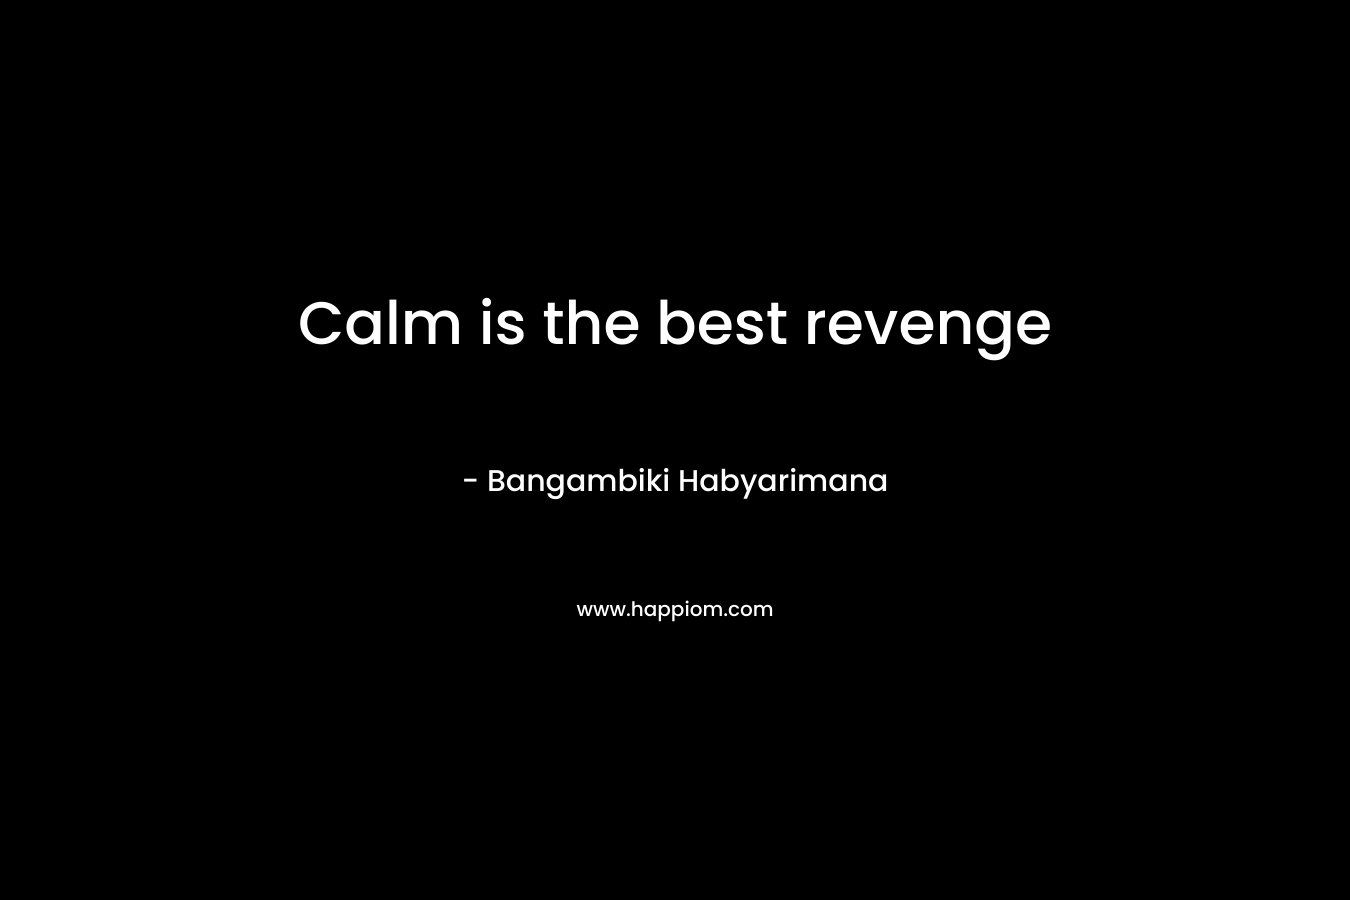 Calm is the best revenge